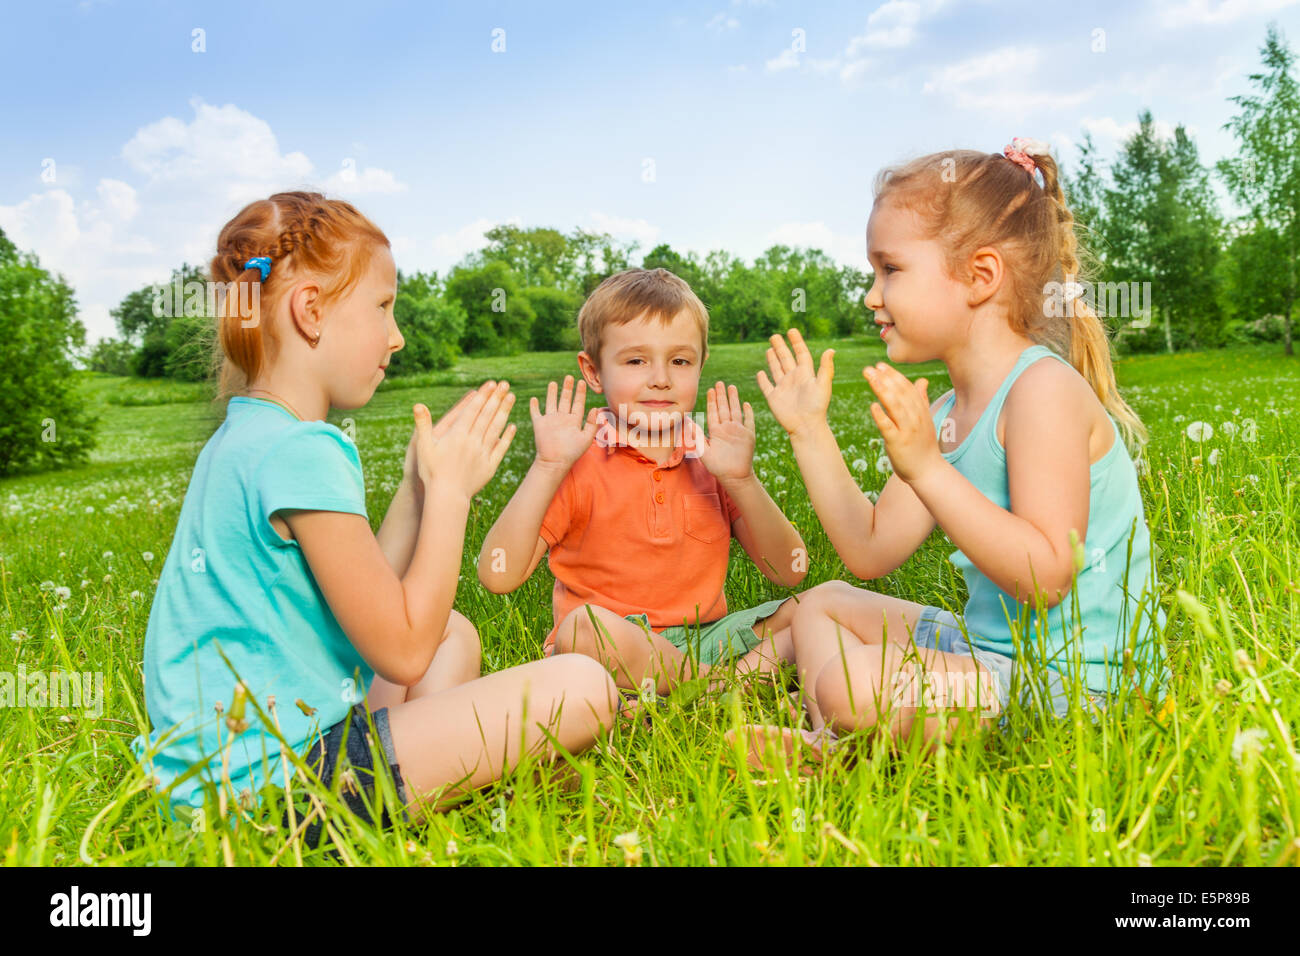 Trois enfants jouant sur une herbe Banque D'Images